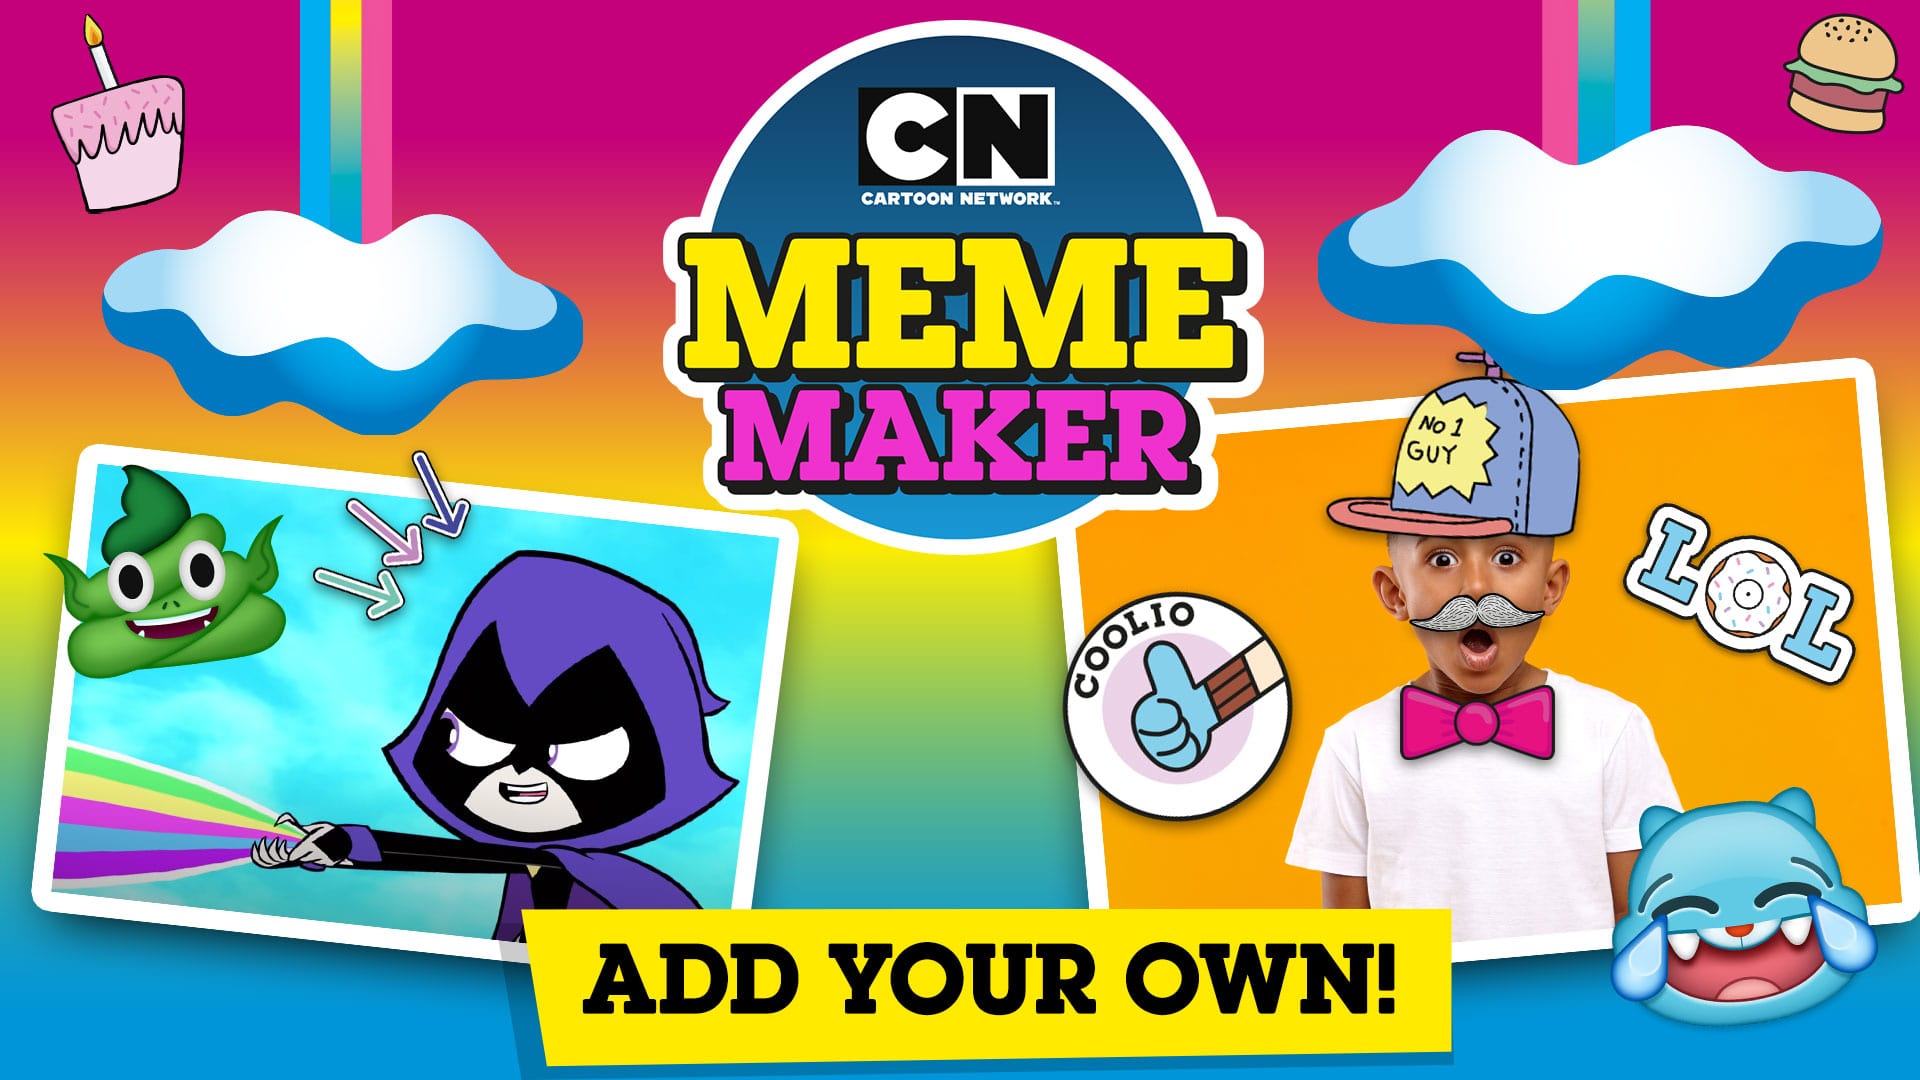 Play Ben 10 games | Free online Ben 10 games | Cartoon Network